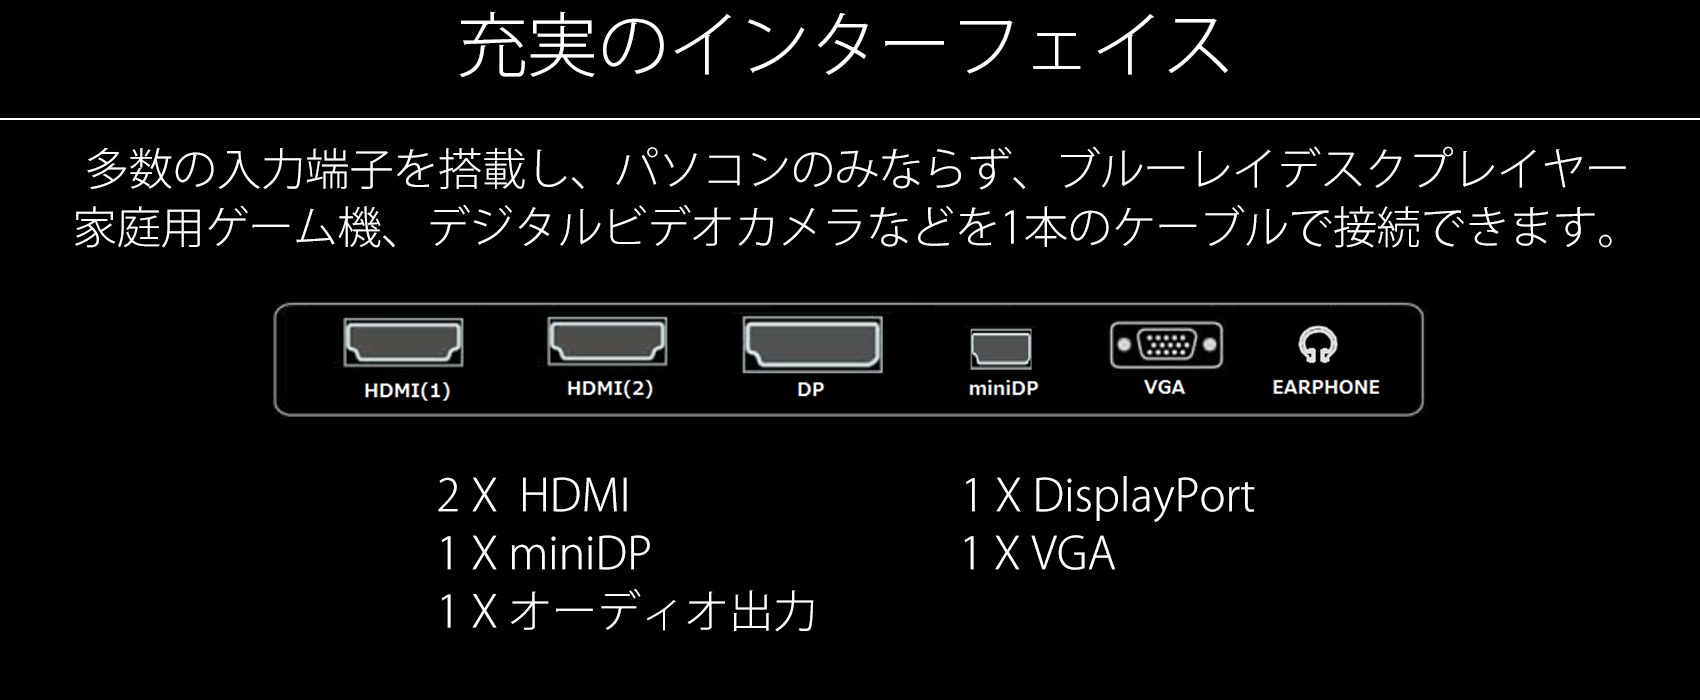 充実のインターフェイス 多数の入力端子を搭載し、パソコンのみならず、ブルーレイデスクプレイヤー 家庭用ゲーム機、デジタルビデオカメラなどを1本のケーブルで接続できます。 HDMI(1) HDMI(2) DP miniDP VGA EARPHONE 2X HDMI 1 X miniDP 1X オーディオ出力 1 X DisplayPort 1 X VGA